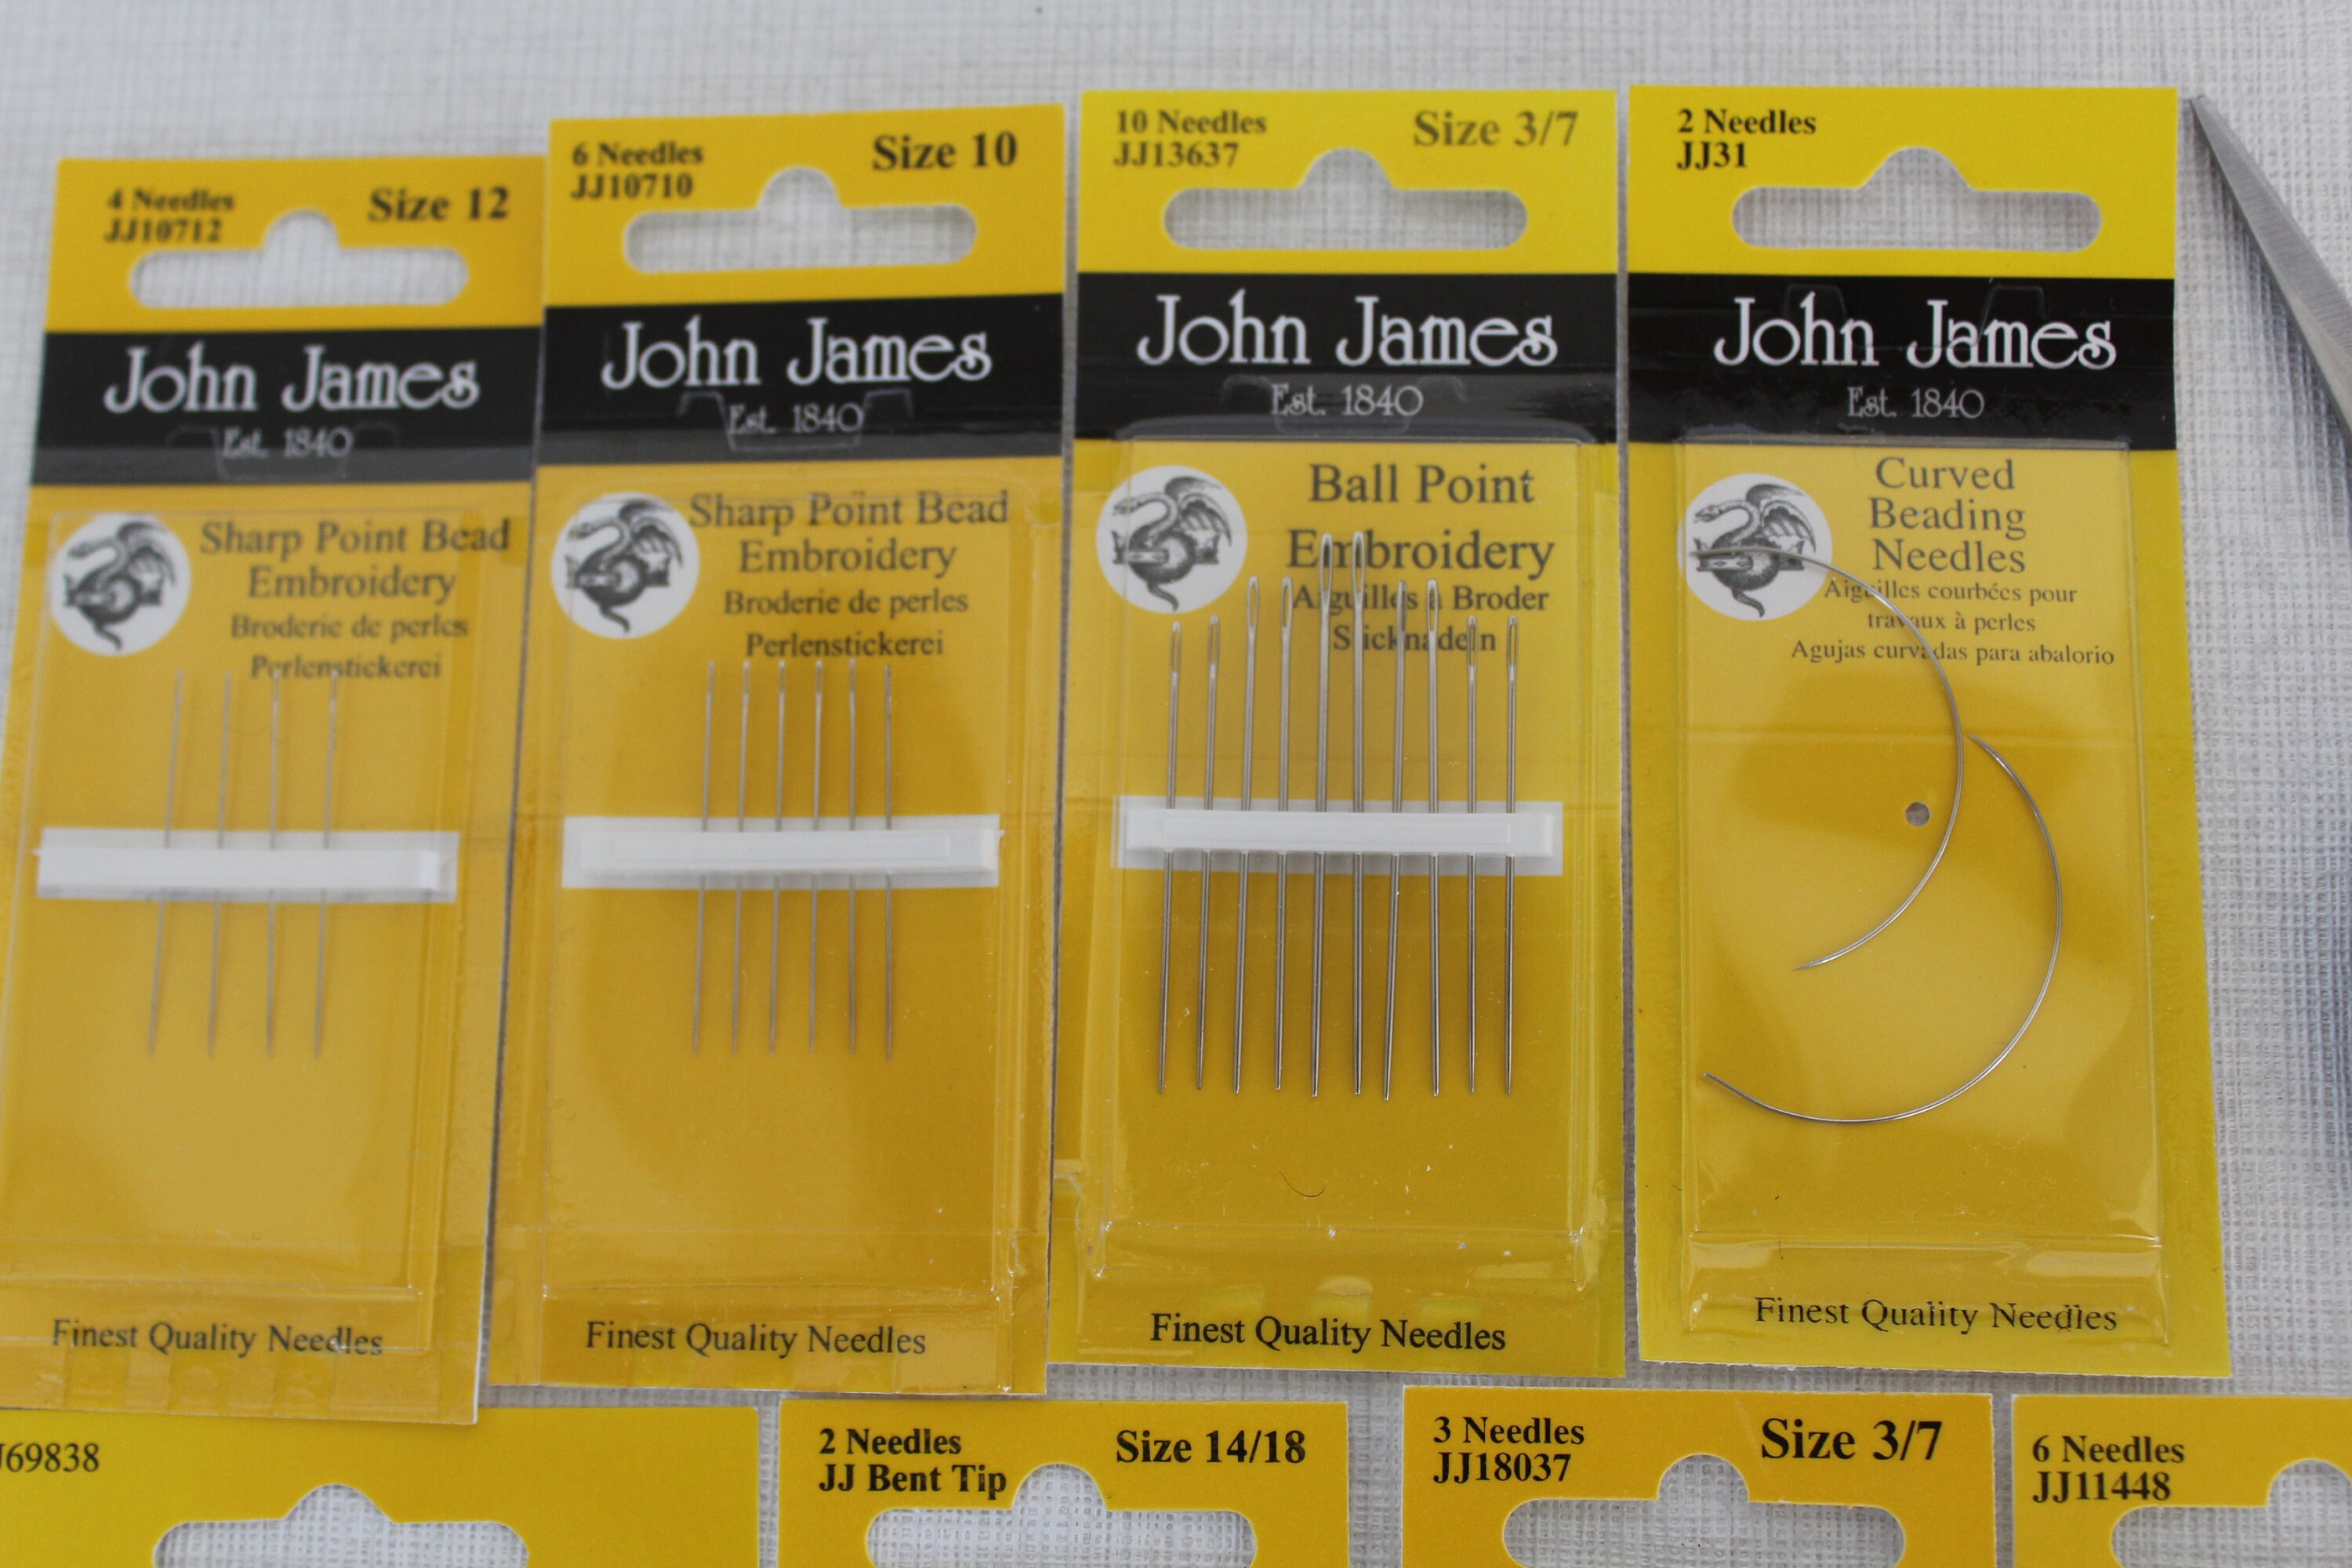 John James Leather Needles JJ18037 Size 3/7